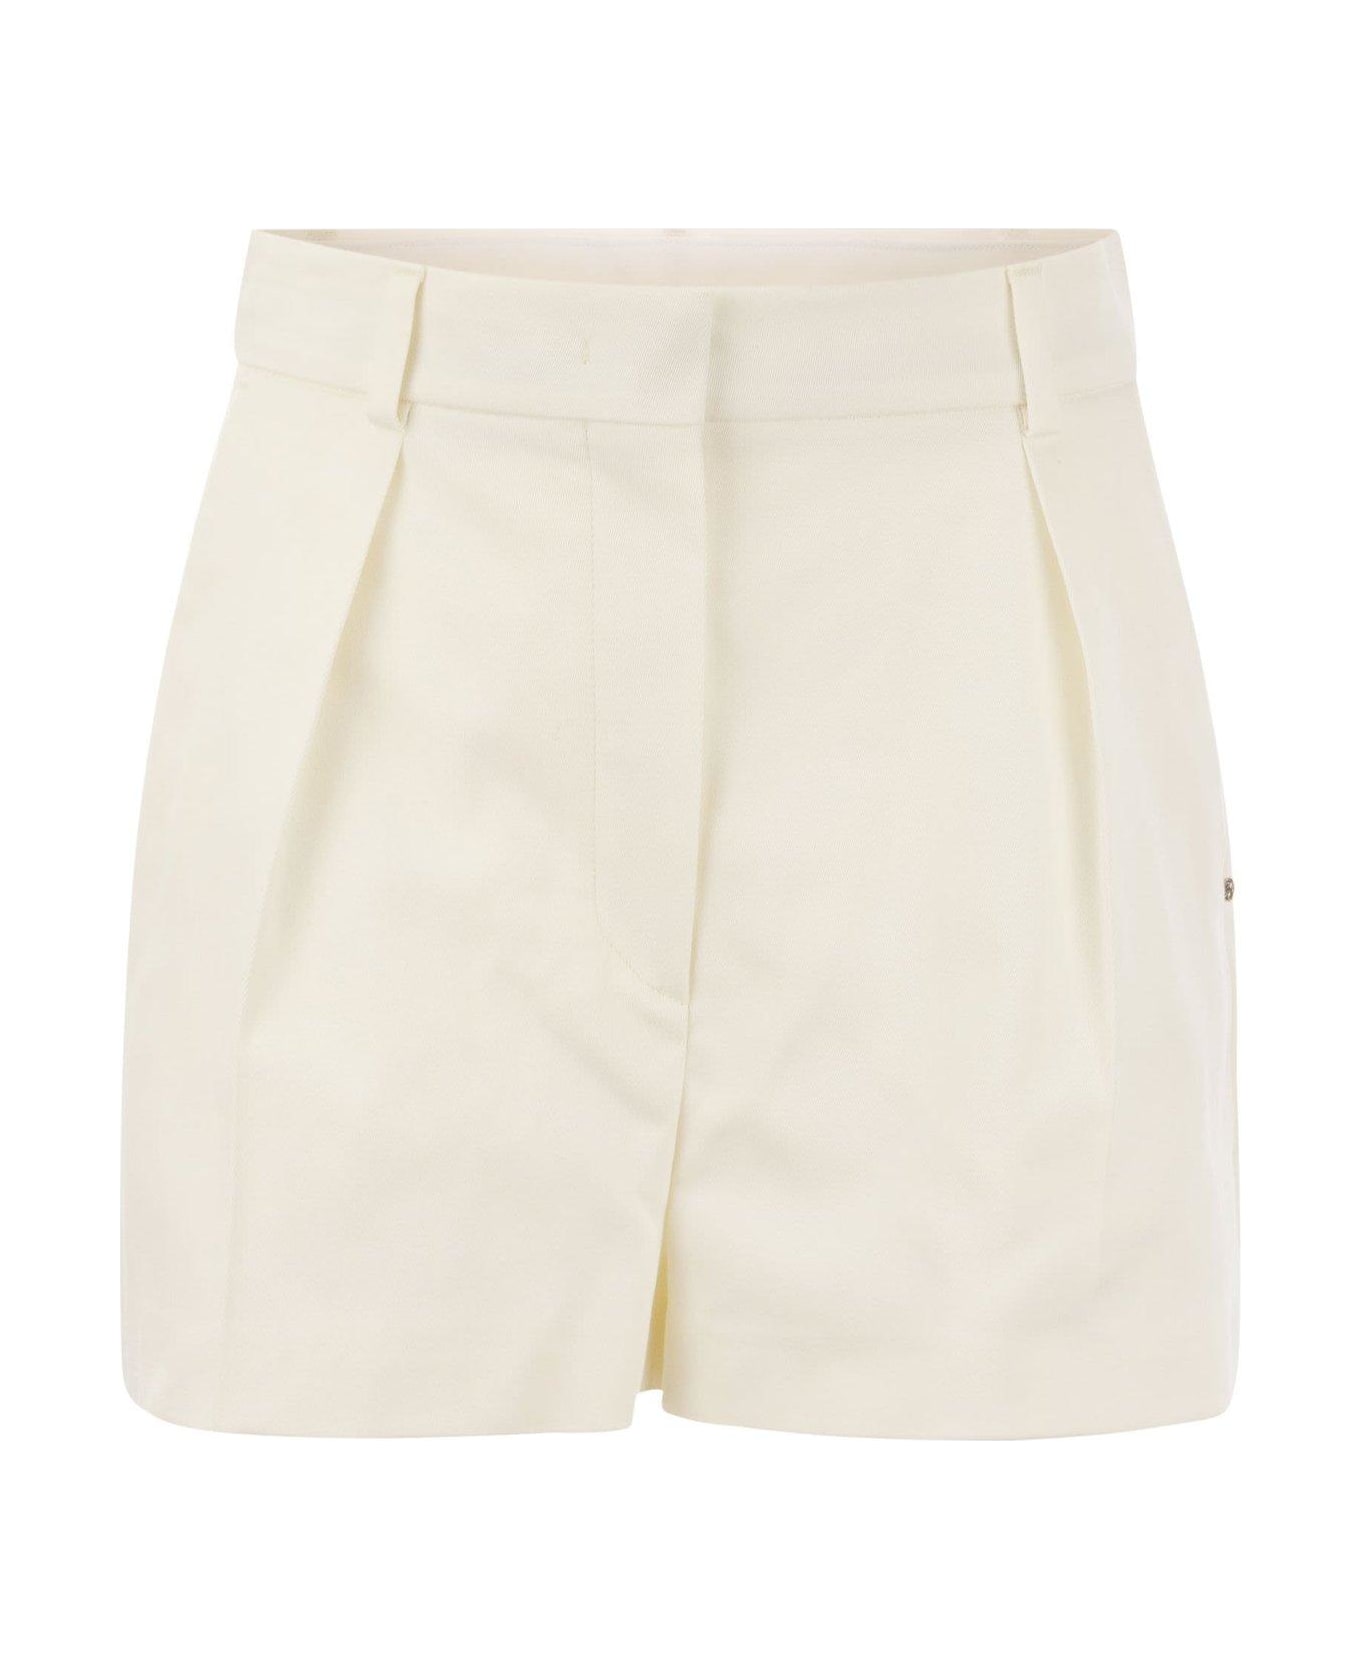 SportMax Unico Washed Shorts - White